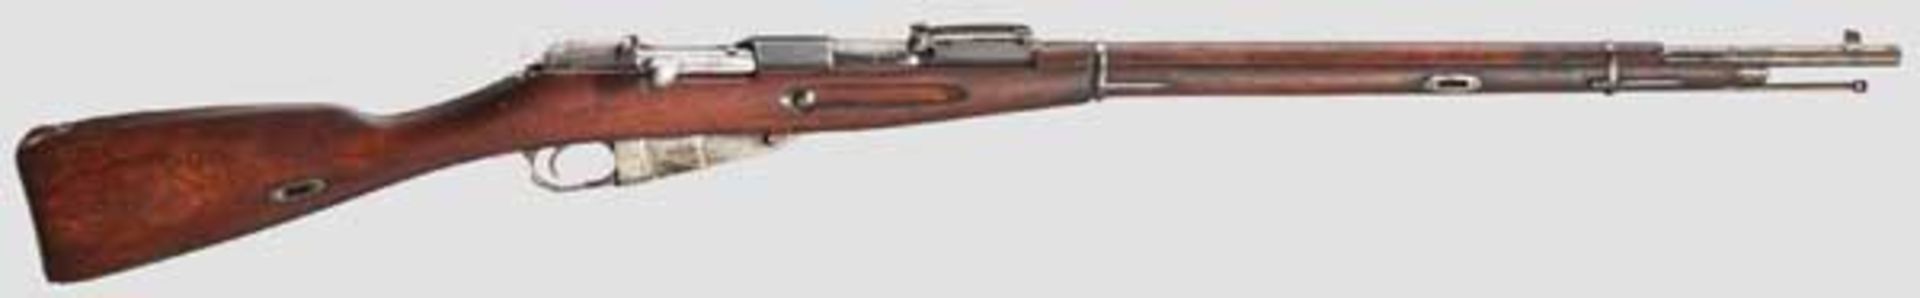 Fremdes Gewehr in deutschen Diensten: Zaristischer Mosin-Nagant Mod. 1891 Kal. 7,62 x 54R, Nr.